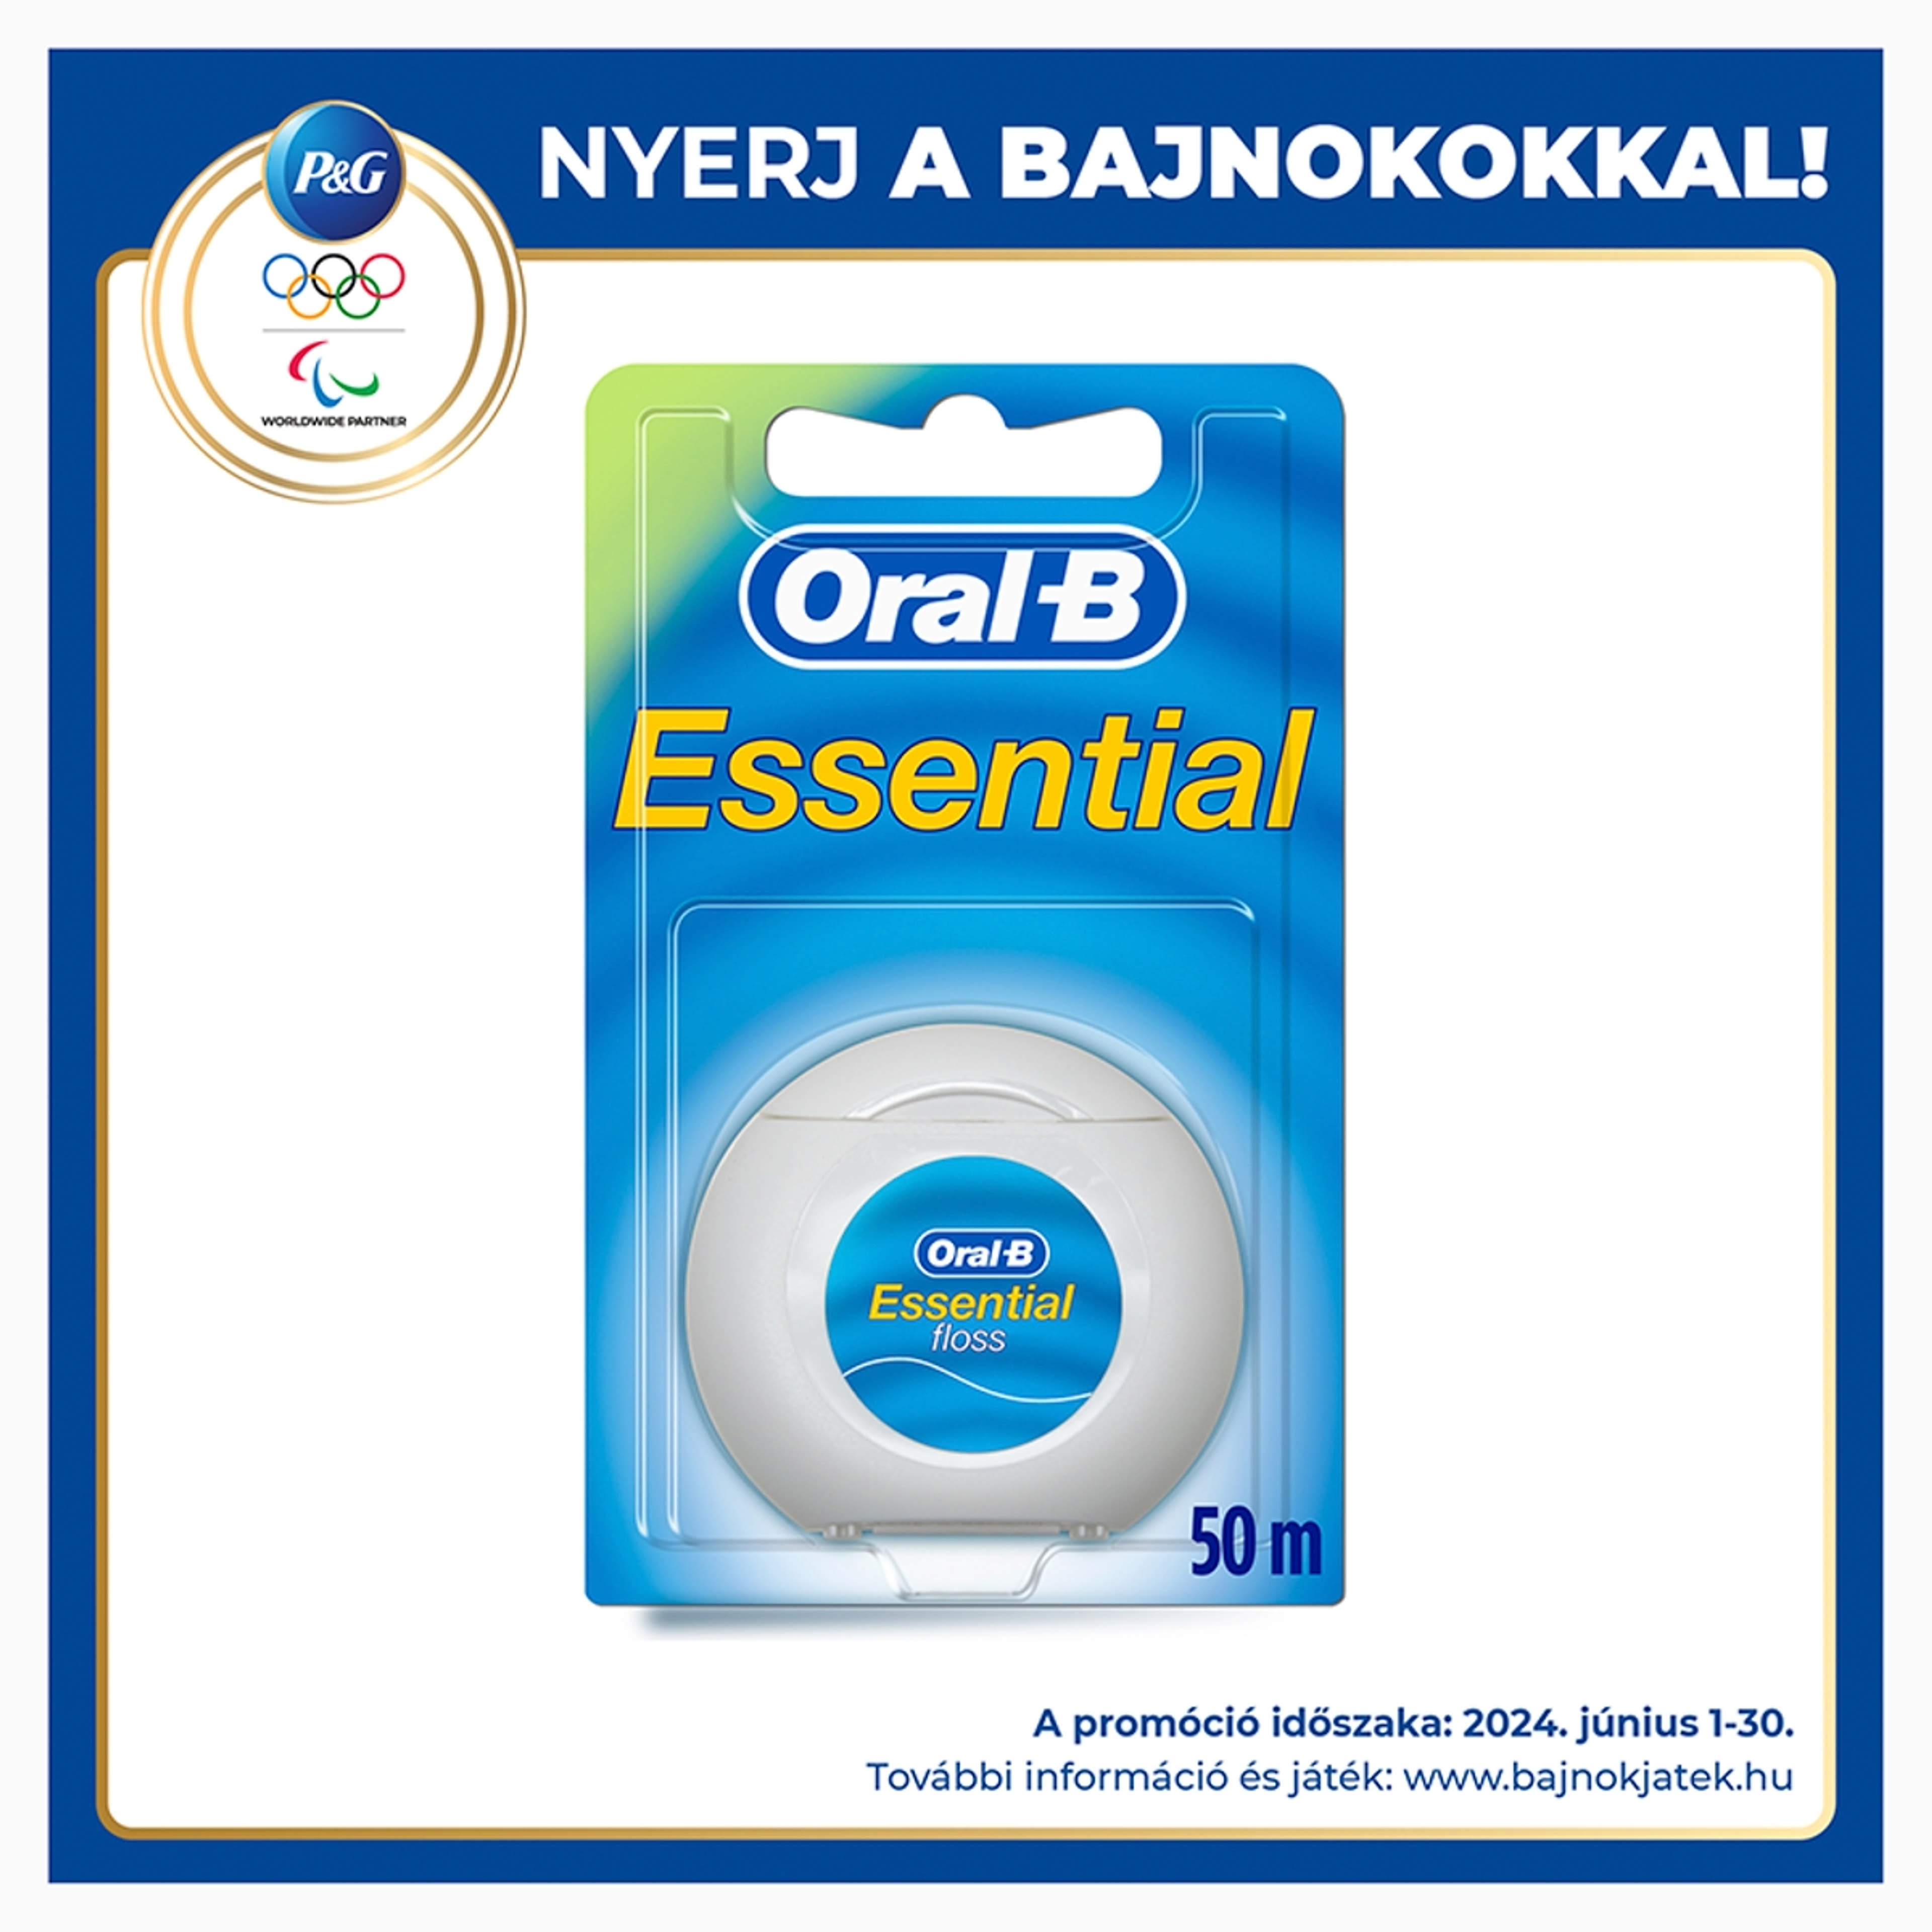 Oral-B Essential fogselyem - 50 m-1